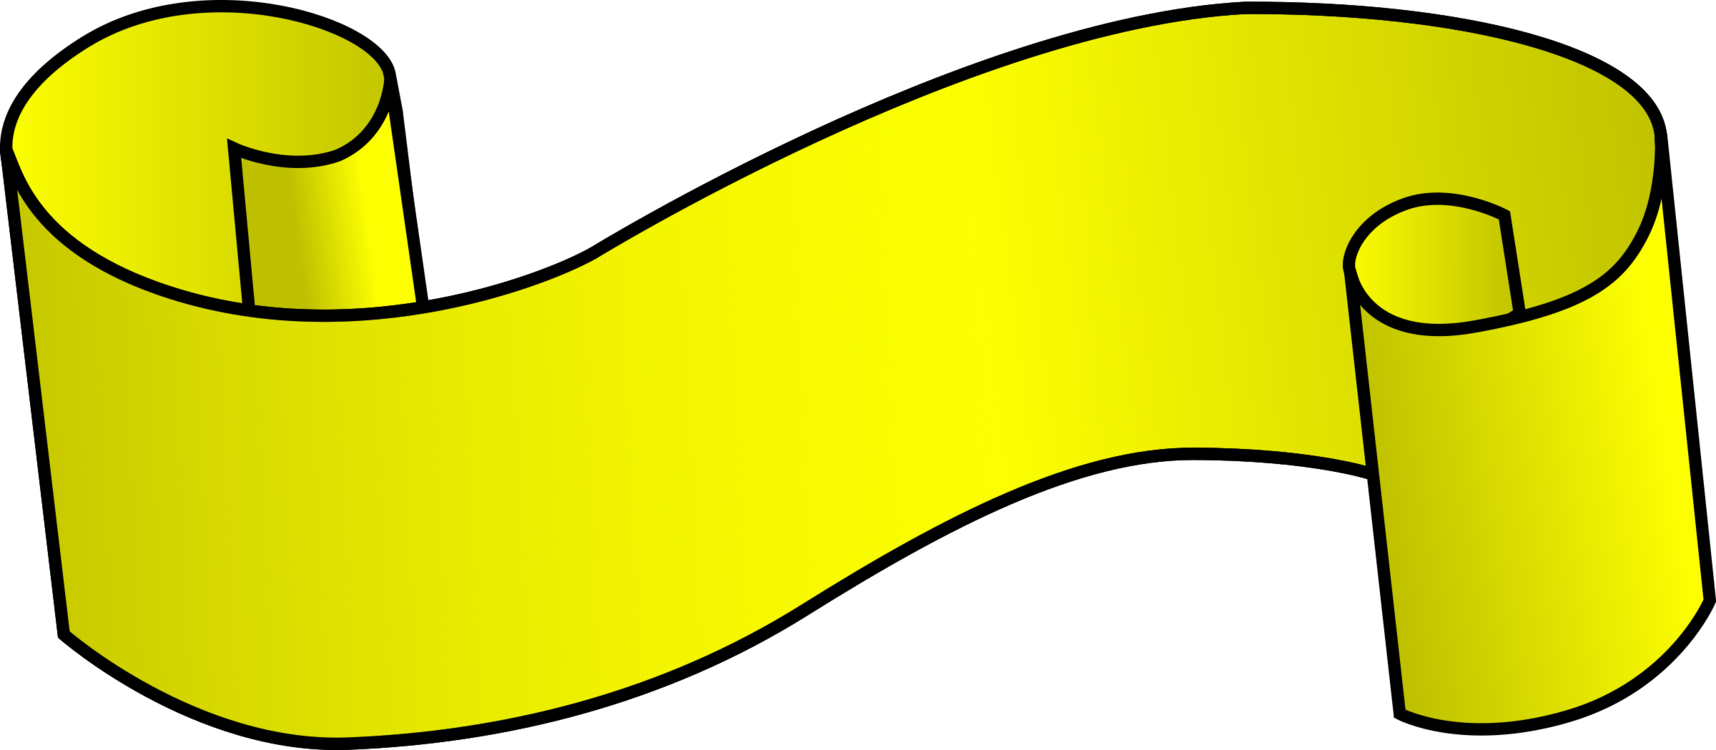 Area,Yellow,Shoe